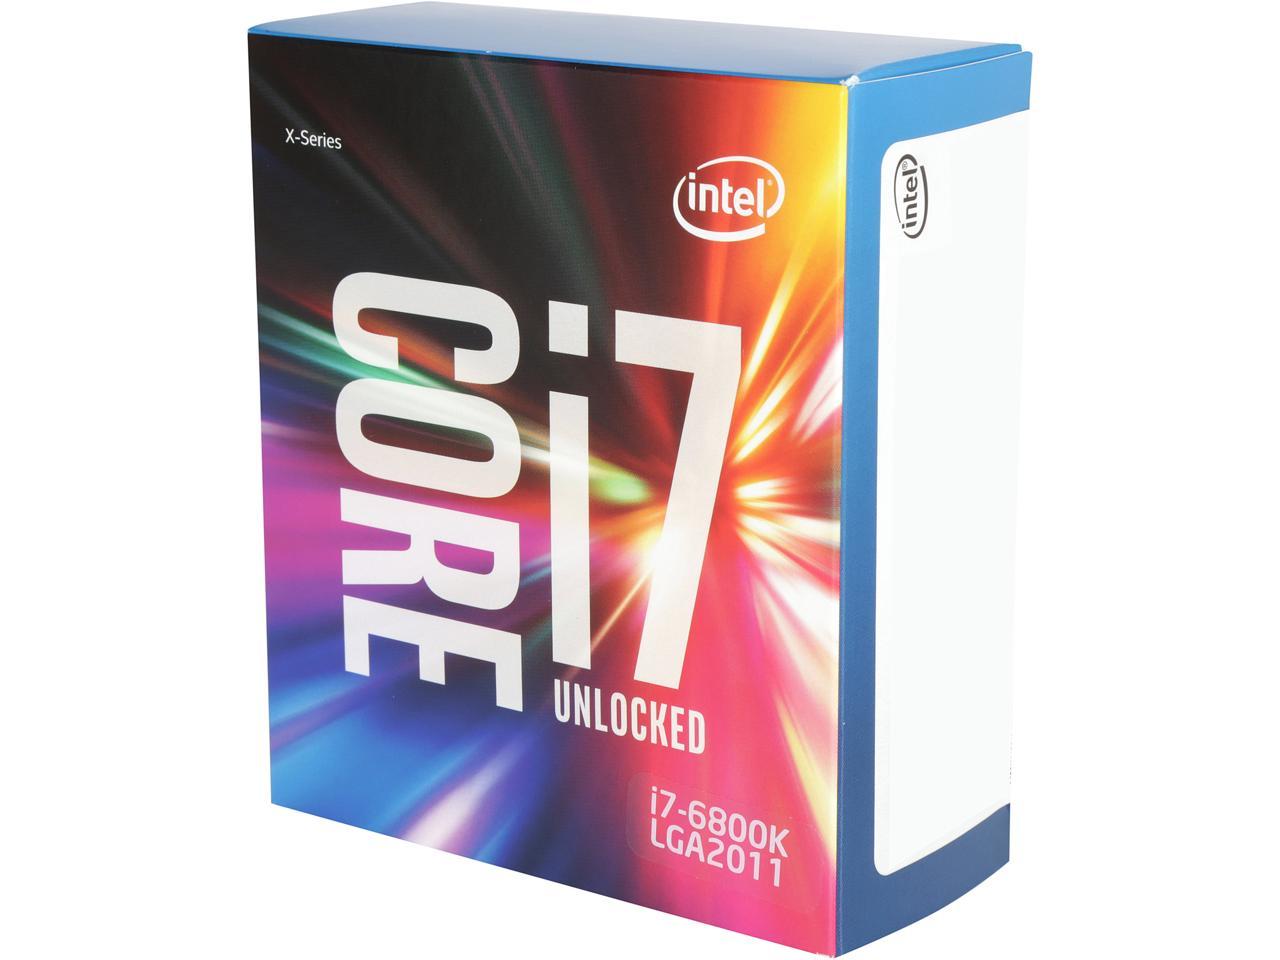 Intel Core i7-6800K - Core i7 6th Gen Broadwell-E 6-Core 3.4 GHz 